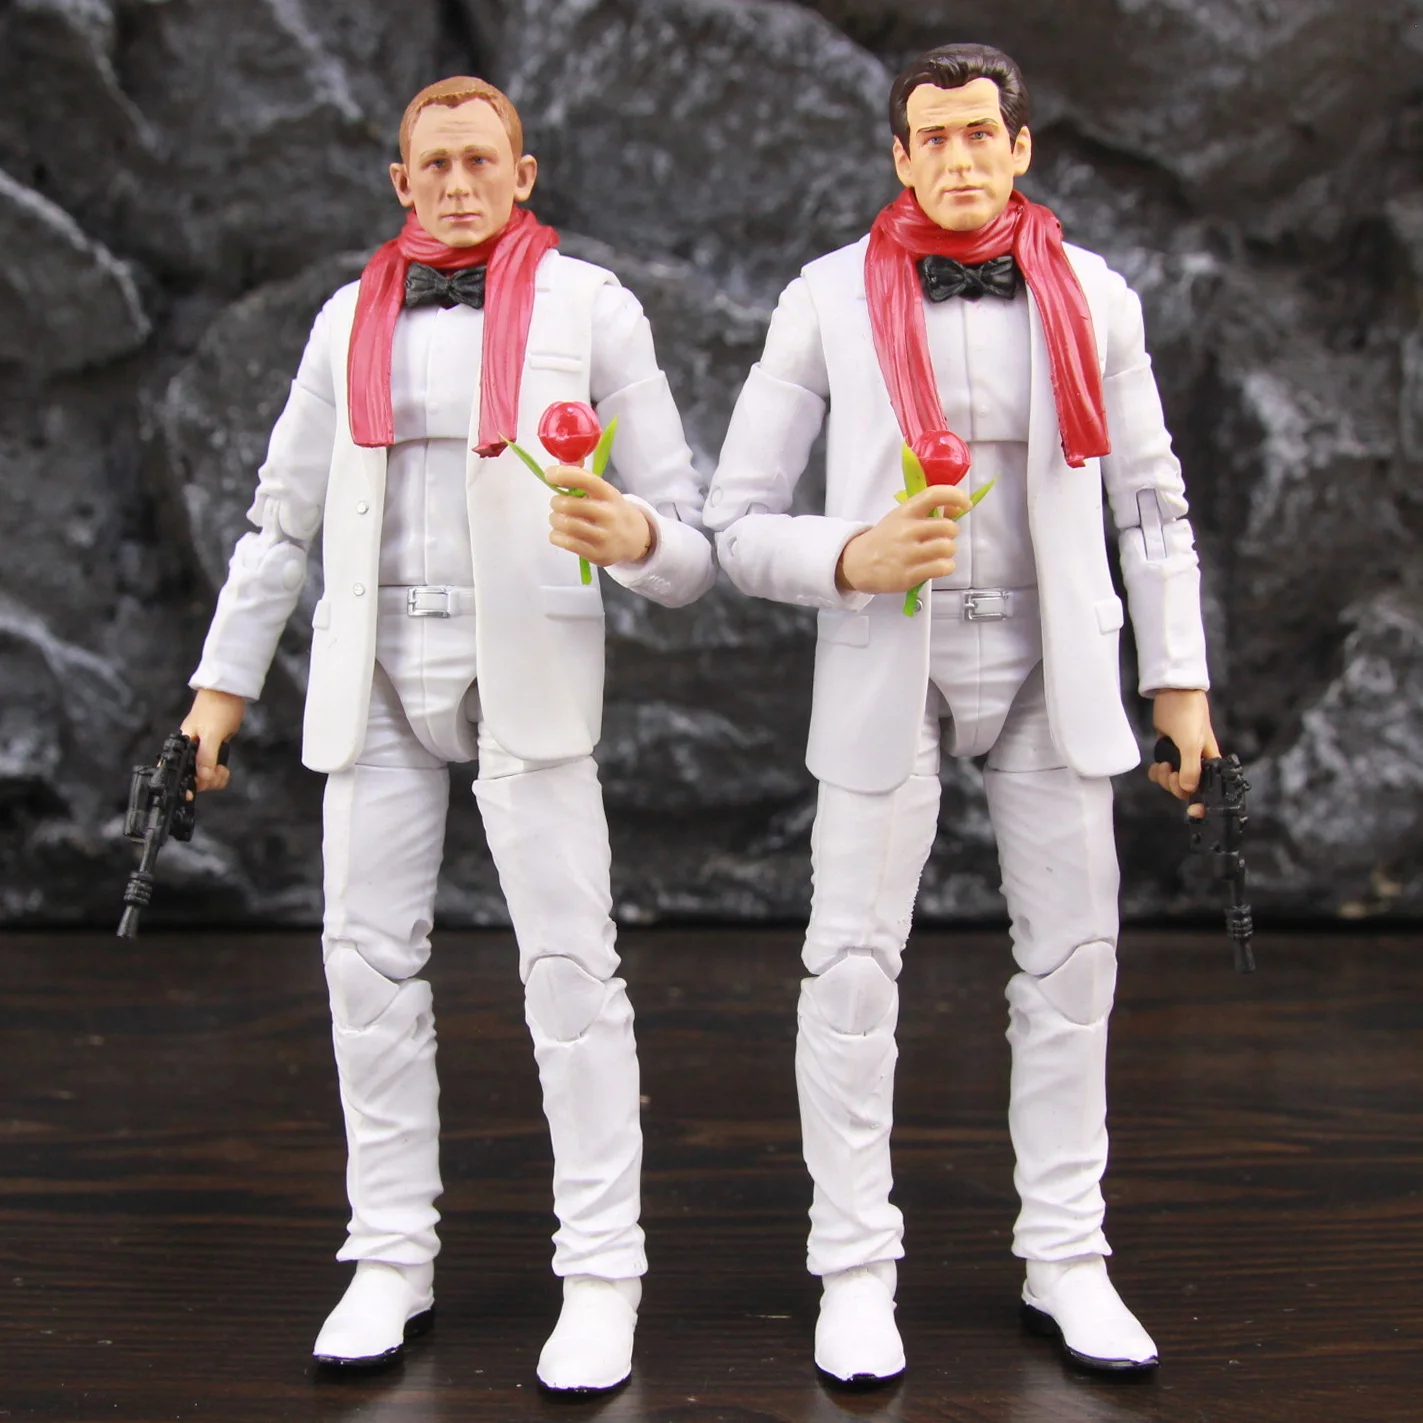 

James 6" Movie Action Figure White Suit Bow Sky Fall Quantum Solace Spectre Daniel Craig Pierce Brosnan Toys Doll Model